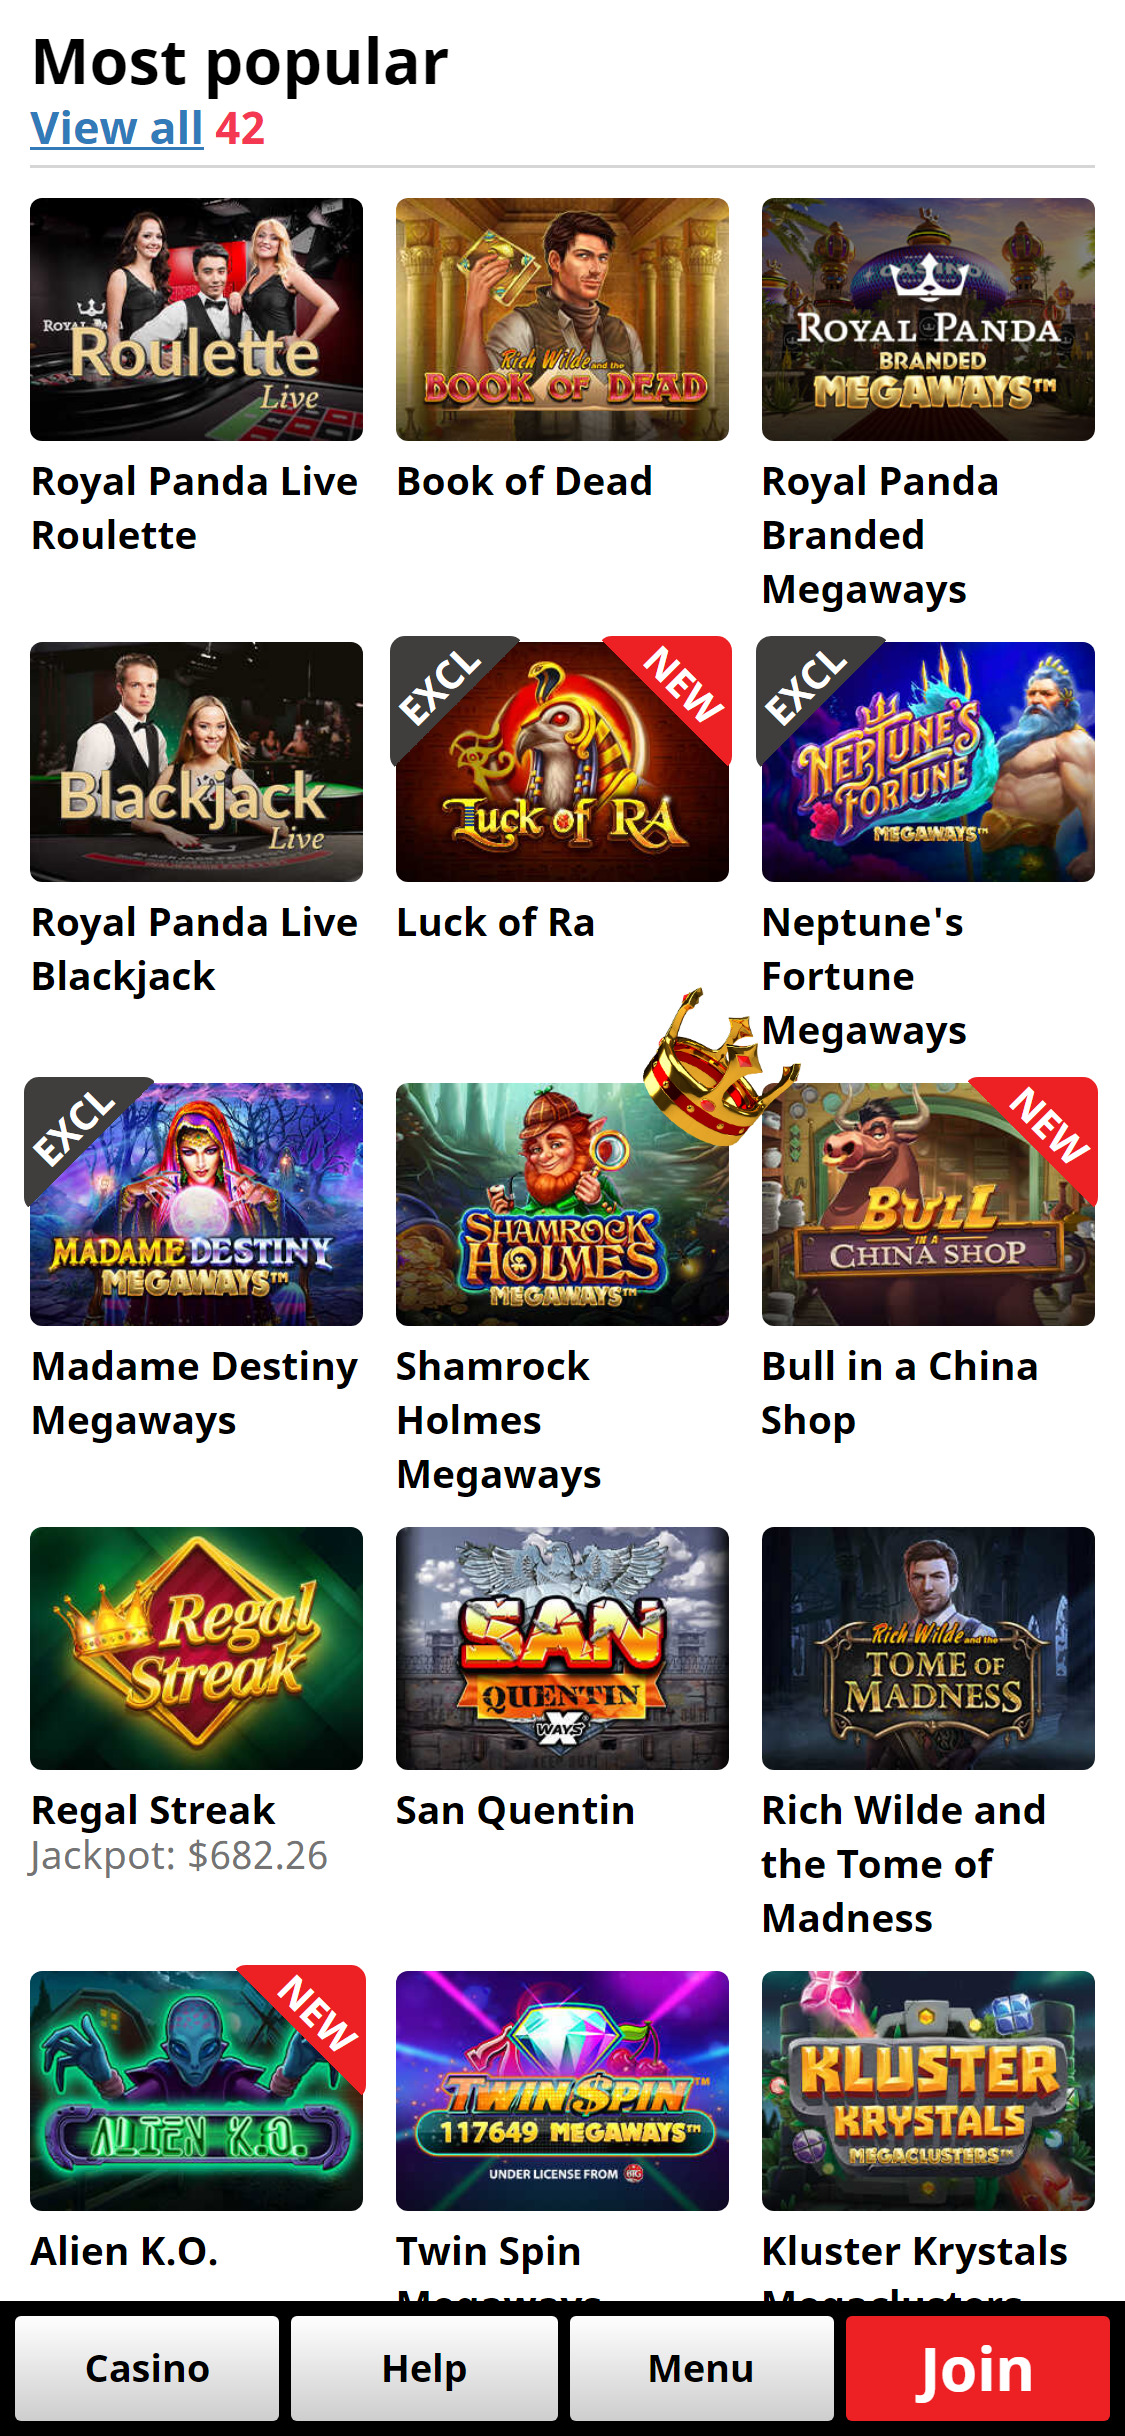 Royal Panda Casino Mobile Games Review